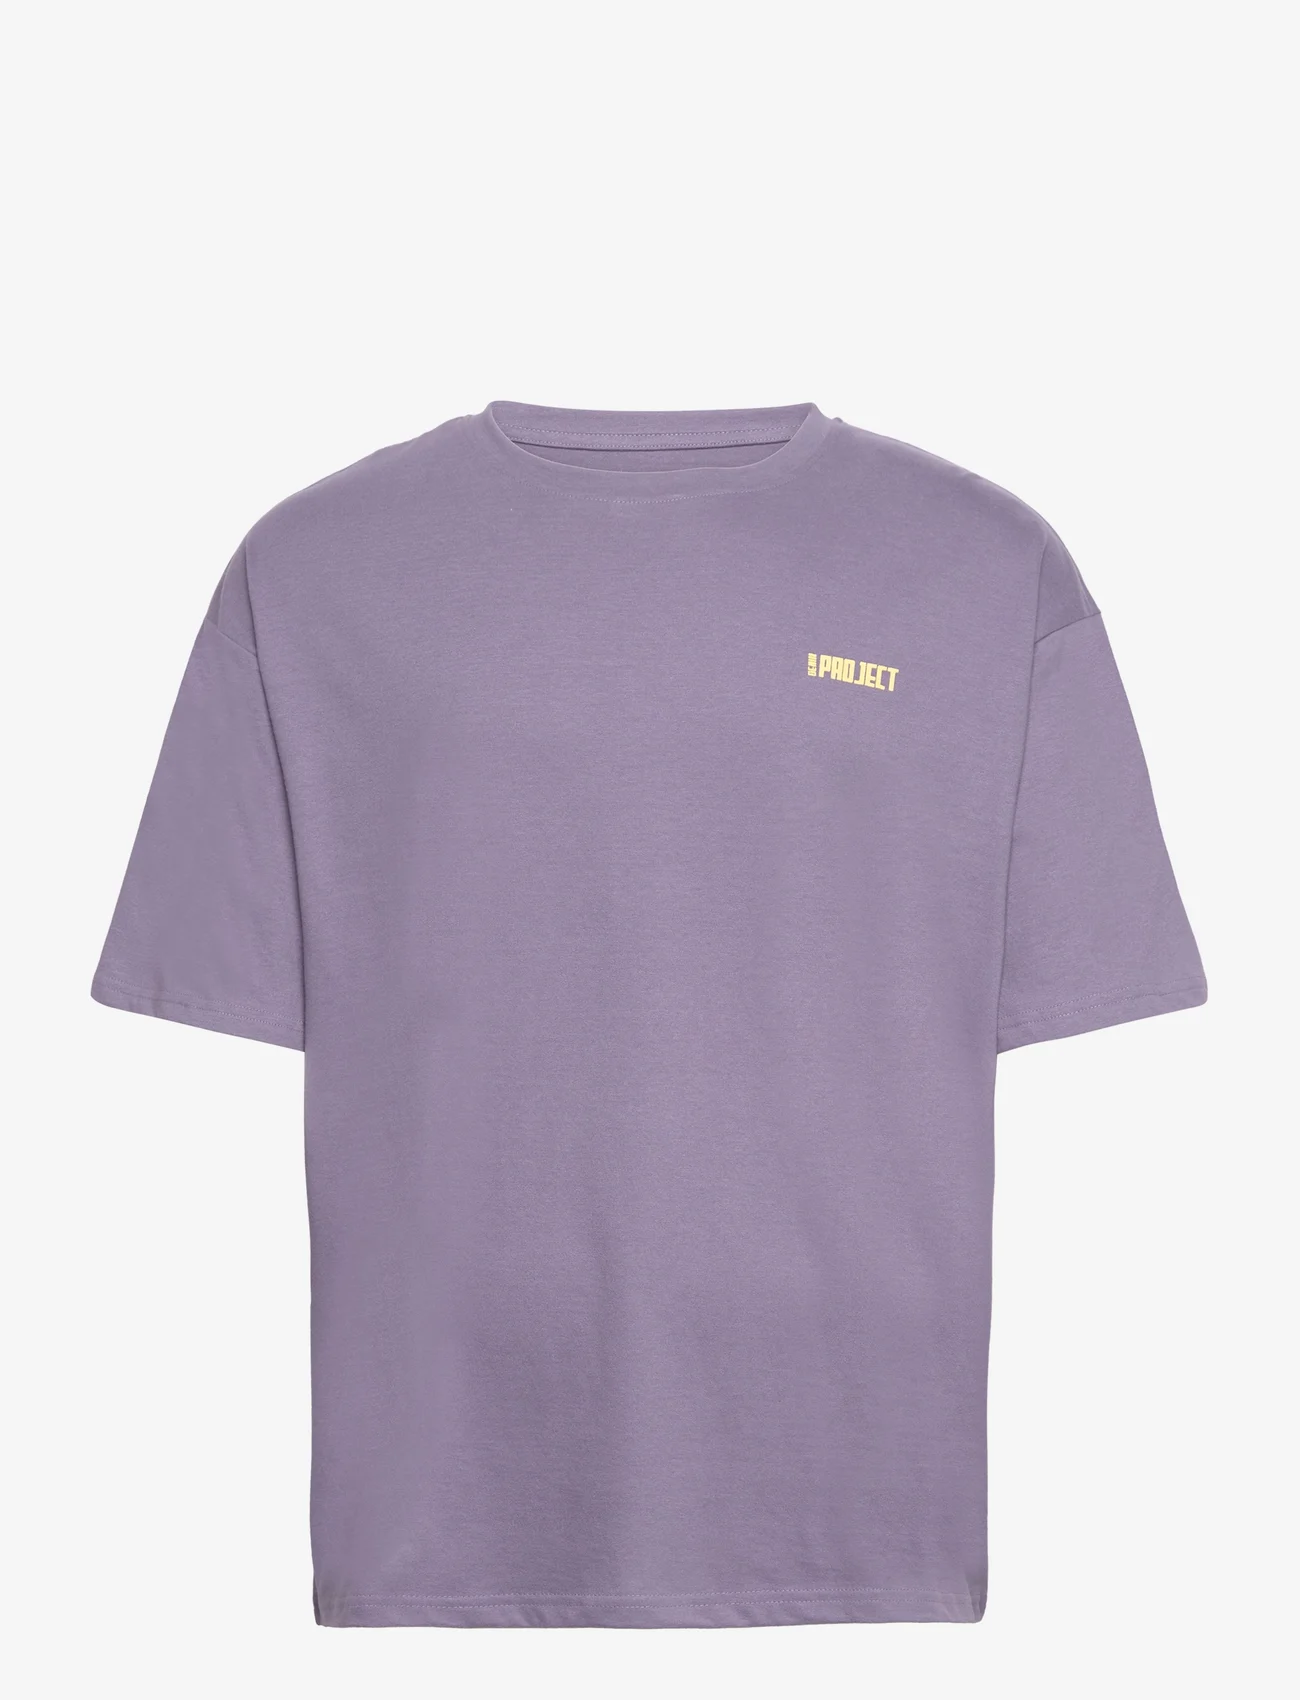 Denim project - DPSignature Print T-Shirt - die niedrigsten preise - cadet purple - 0